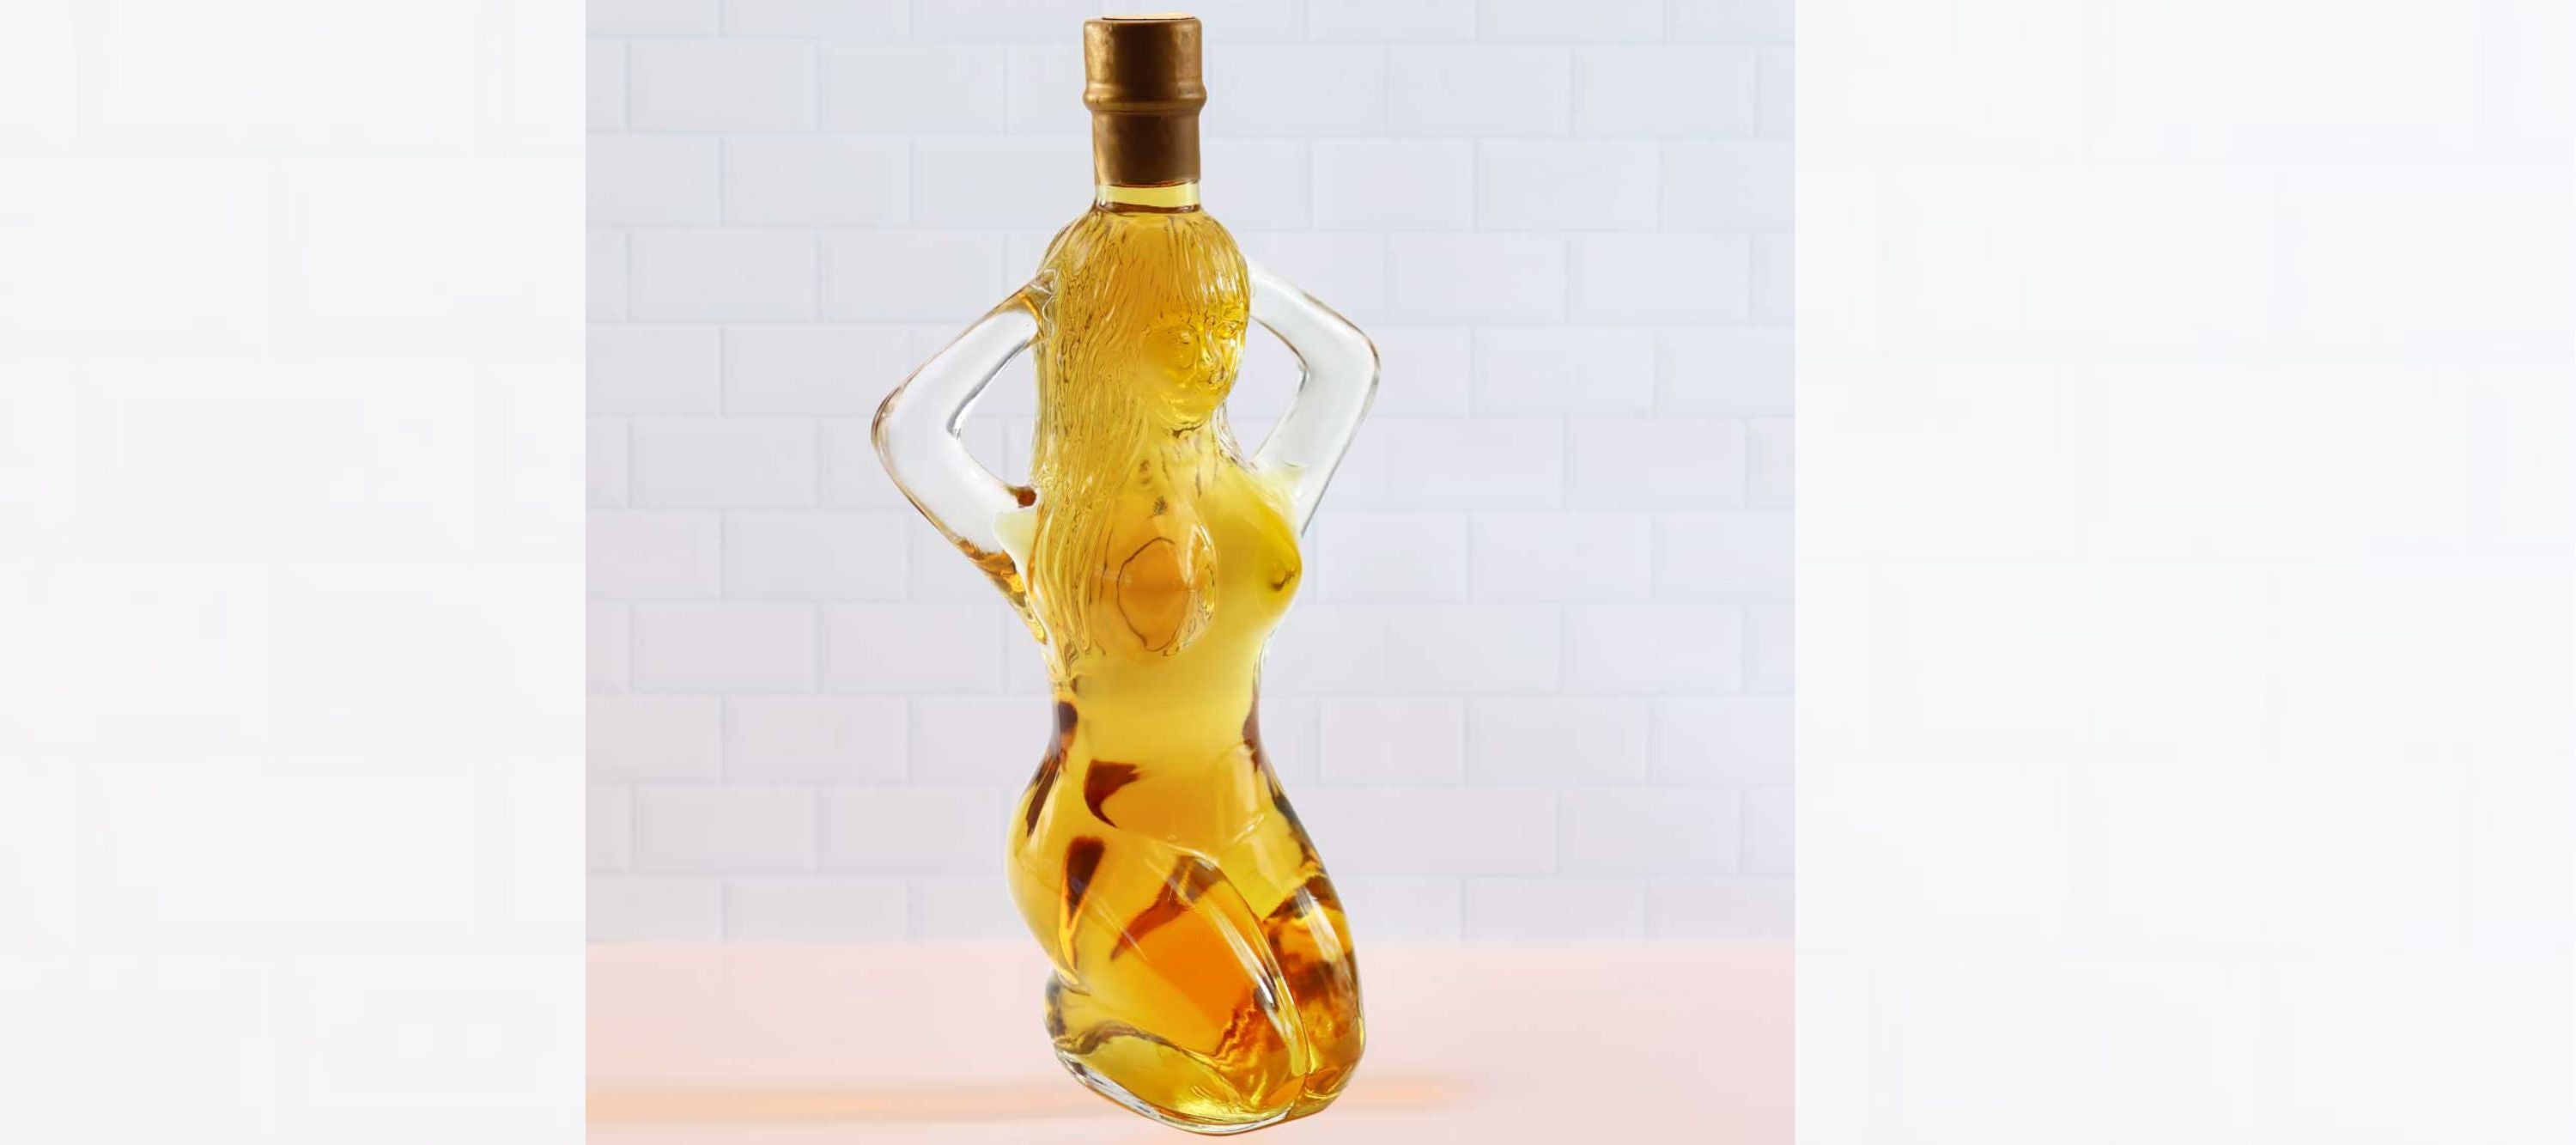 Bundaberg Rum in a Venus Bottle